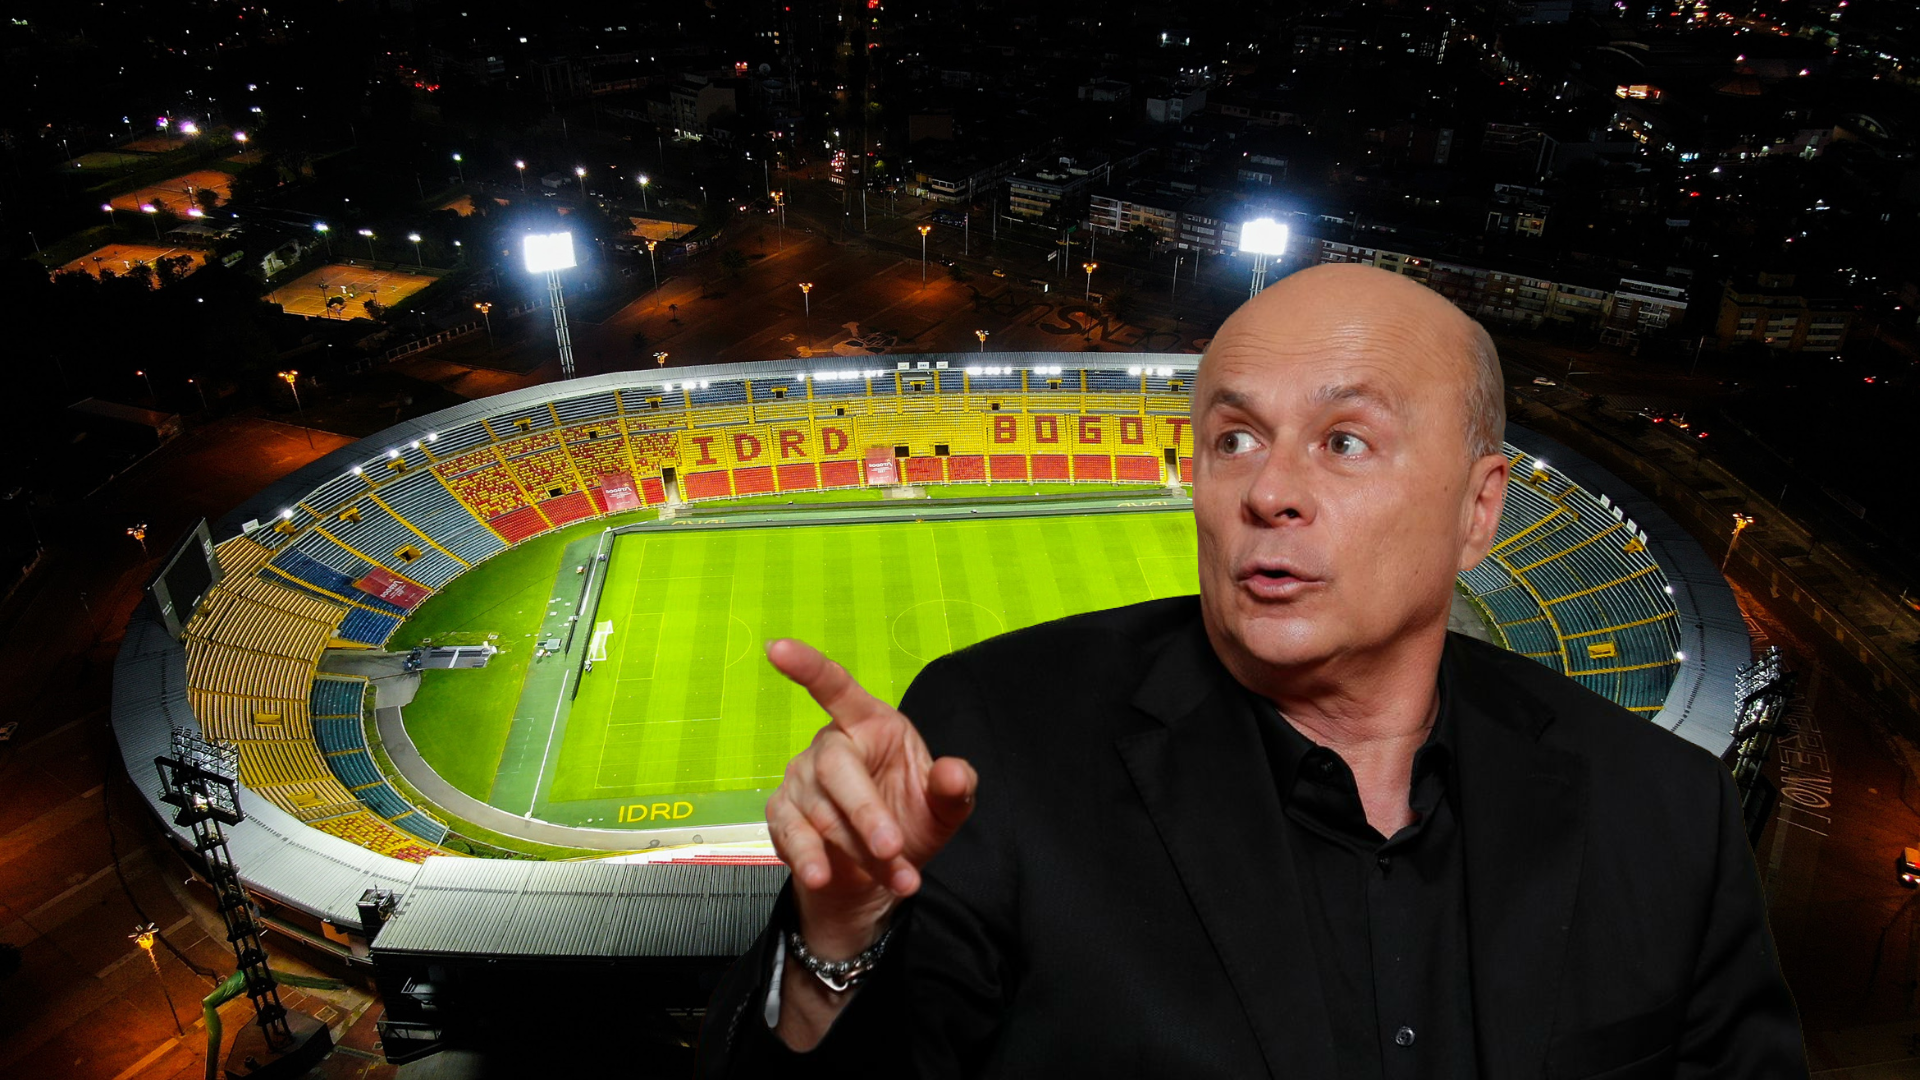 Carlos Antonio Vélez furioso por el préstamo de estadios para conciertos: “Se los dan a cualquier perro que ladra”